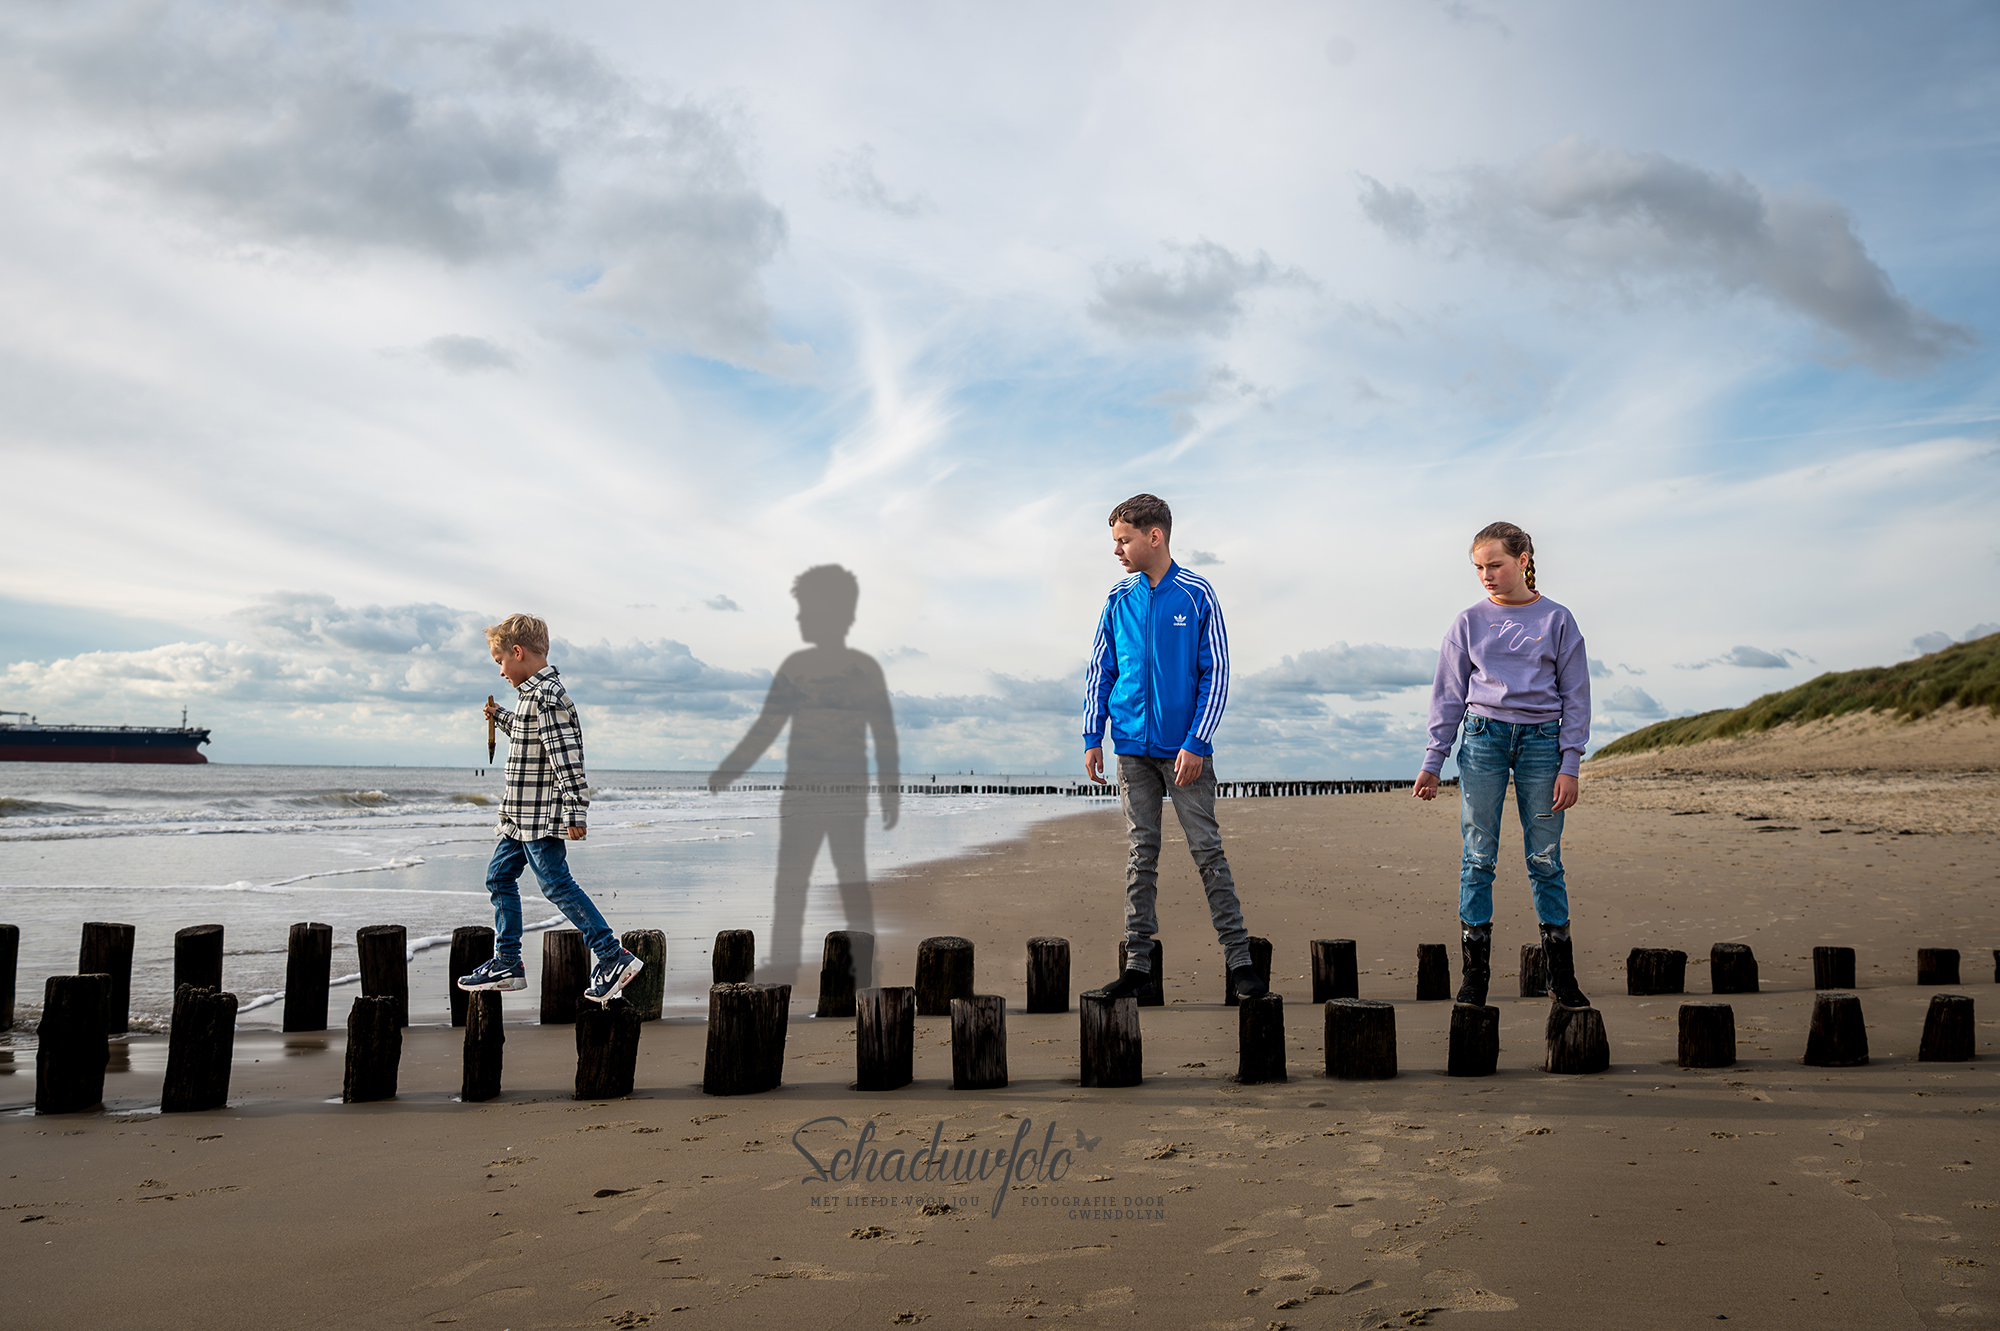 Schaduwfoto in samenwerking met Gwendolyn Pieters uit Zeeland overleden zoontje getekend door Dasja Dijkstra fotohoot aan de Zeeuwse kust